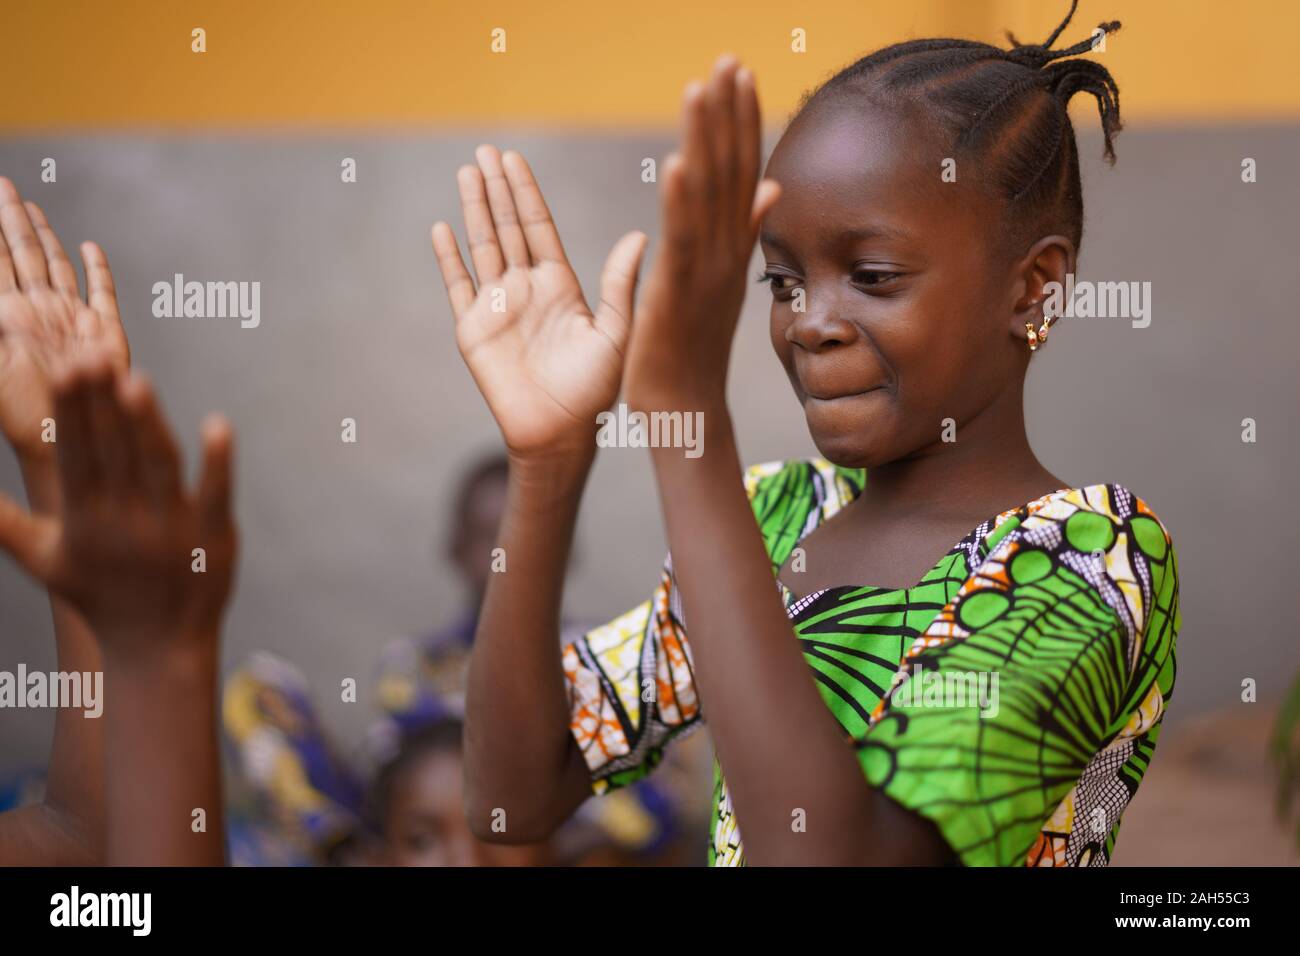 Jeune fille africaine se concentrant sur son jeu de mains Banque D'Images